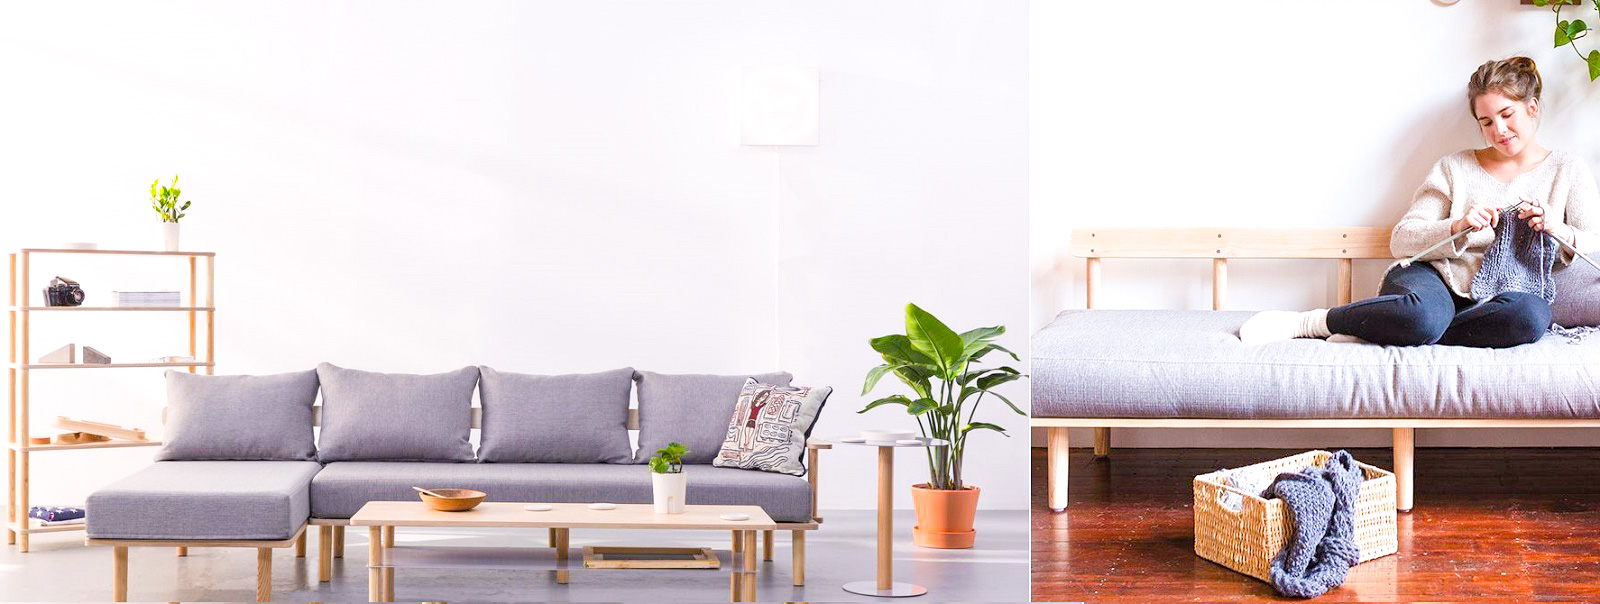 Greycork Living Room Set - комплект меблів для вітальні